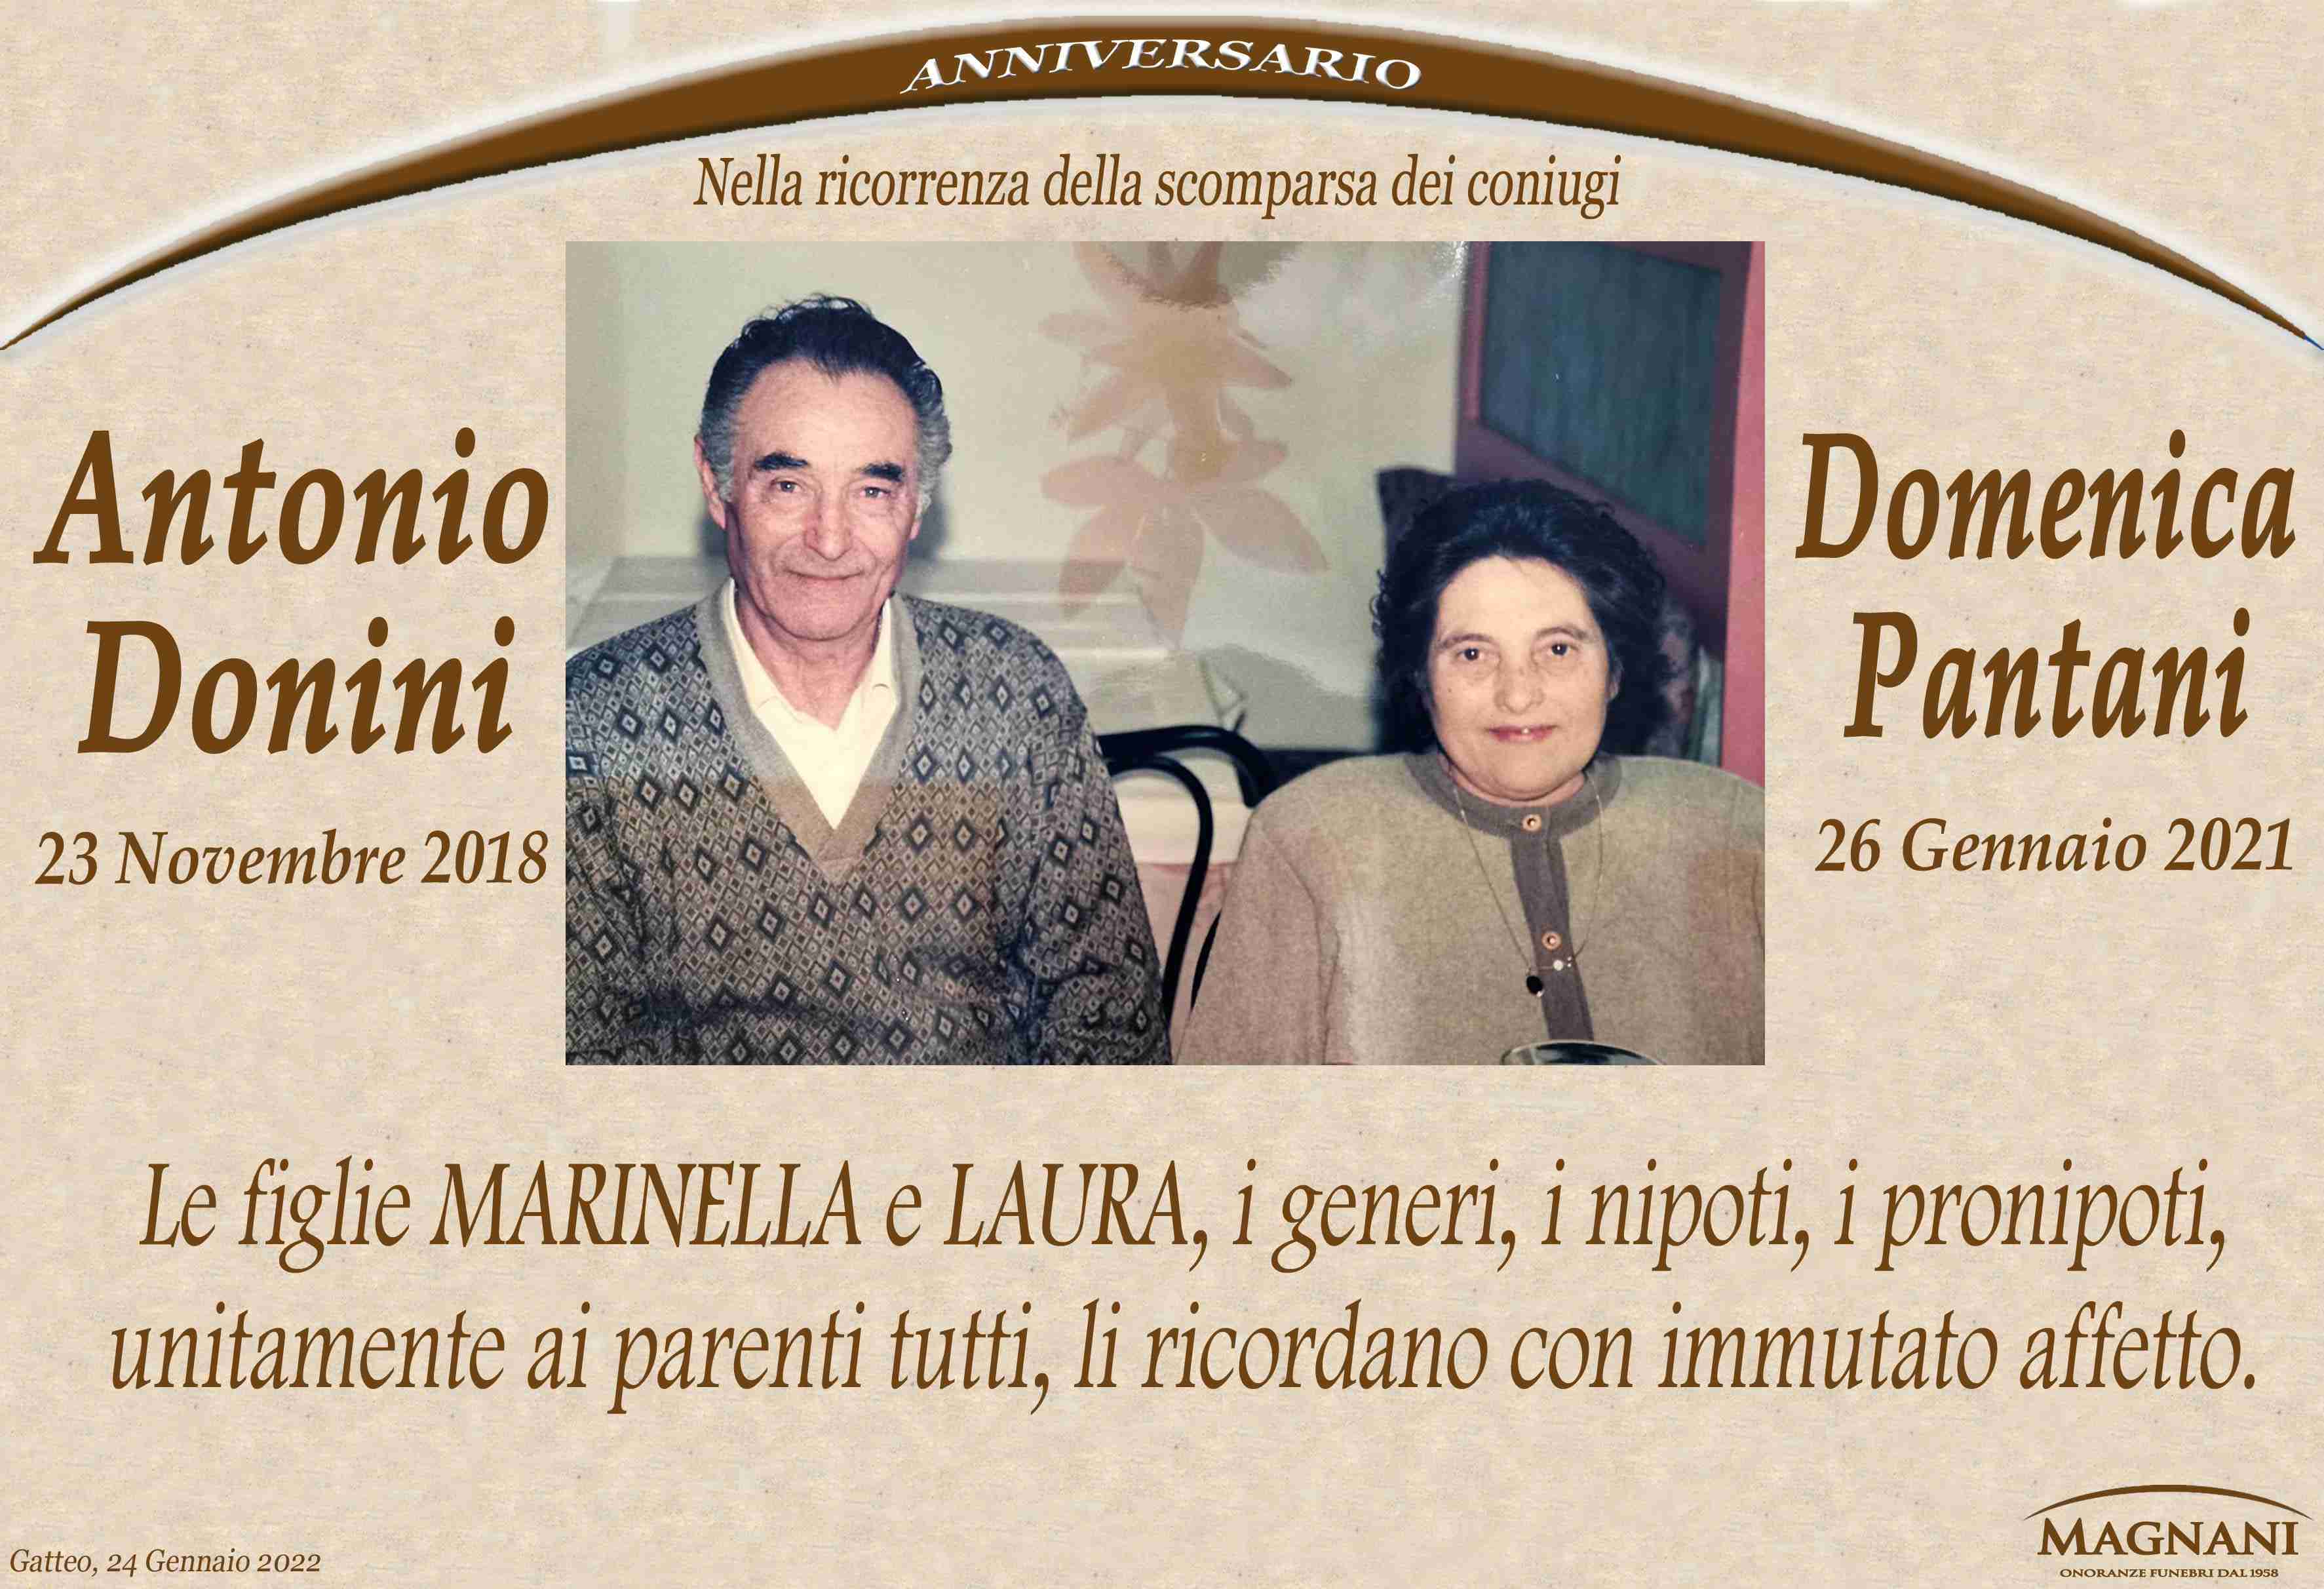 Antonio Donini e Domenica Pantani